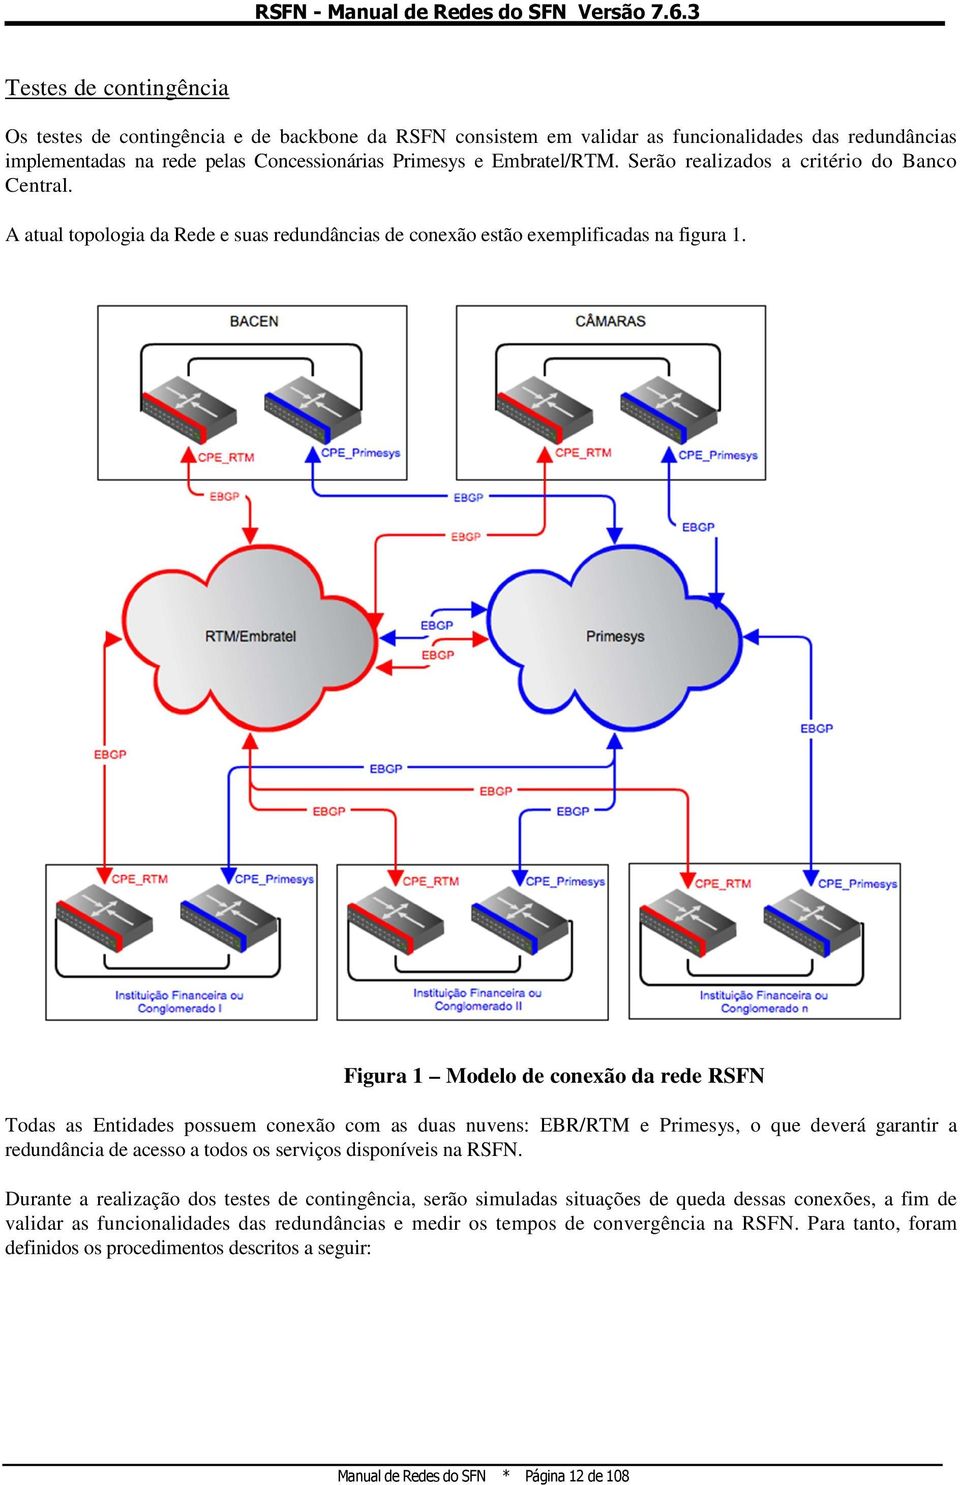 Figura 1 Modelo de conexão da rede RSFN Todas as Entidades possuem conexão com as duas nuvens: EBR/RTM e Primesys, o que deverá garantir a redundância de acesso a todos os serviços disponíveis na